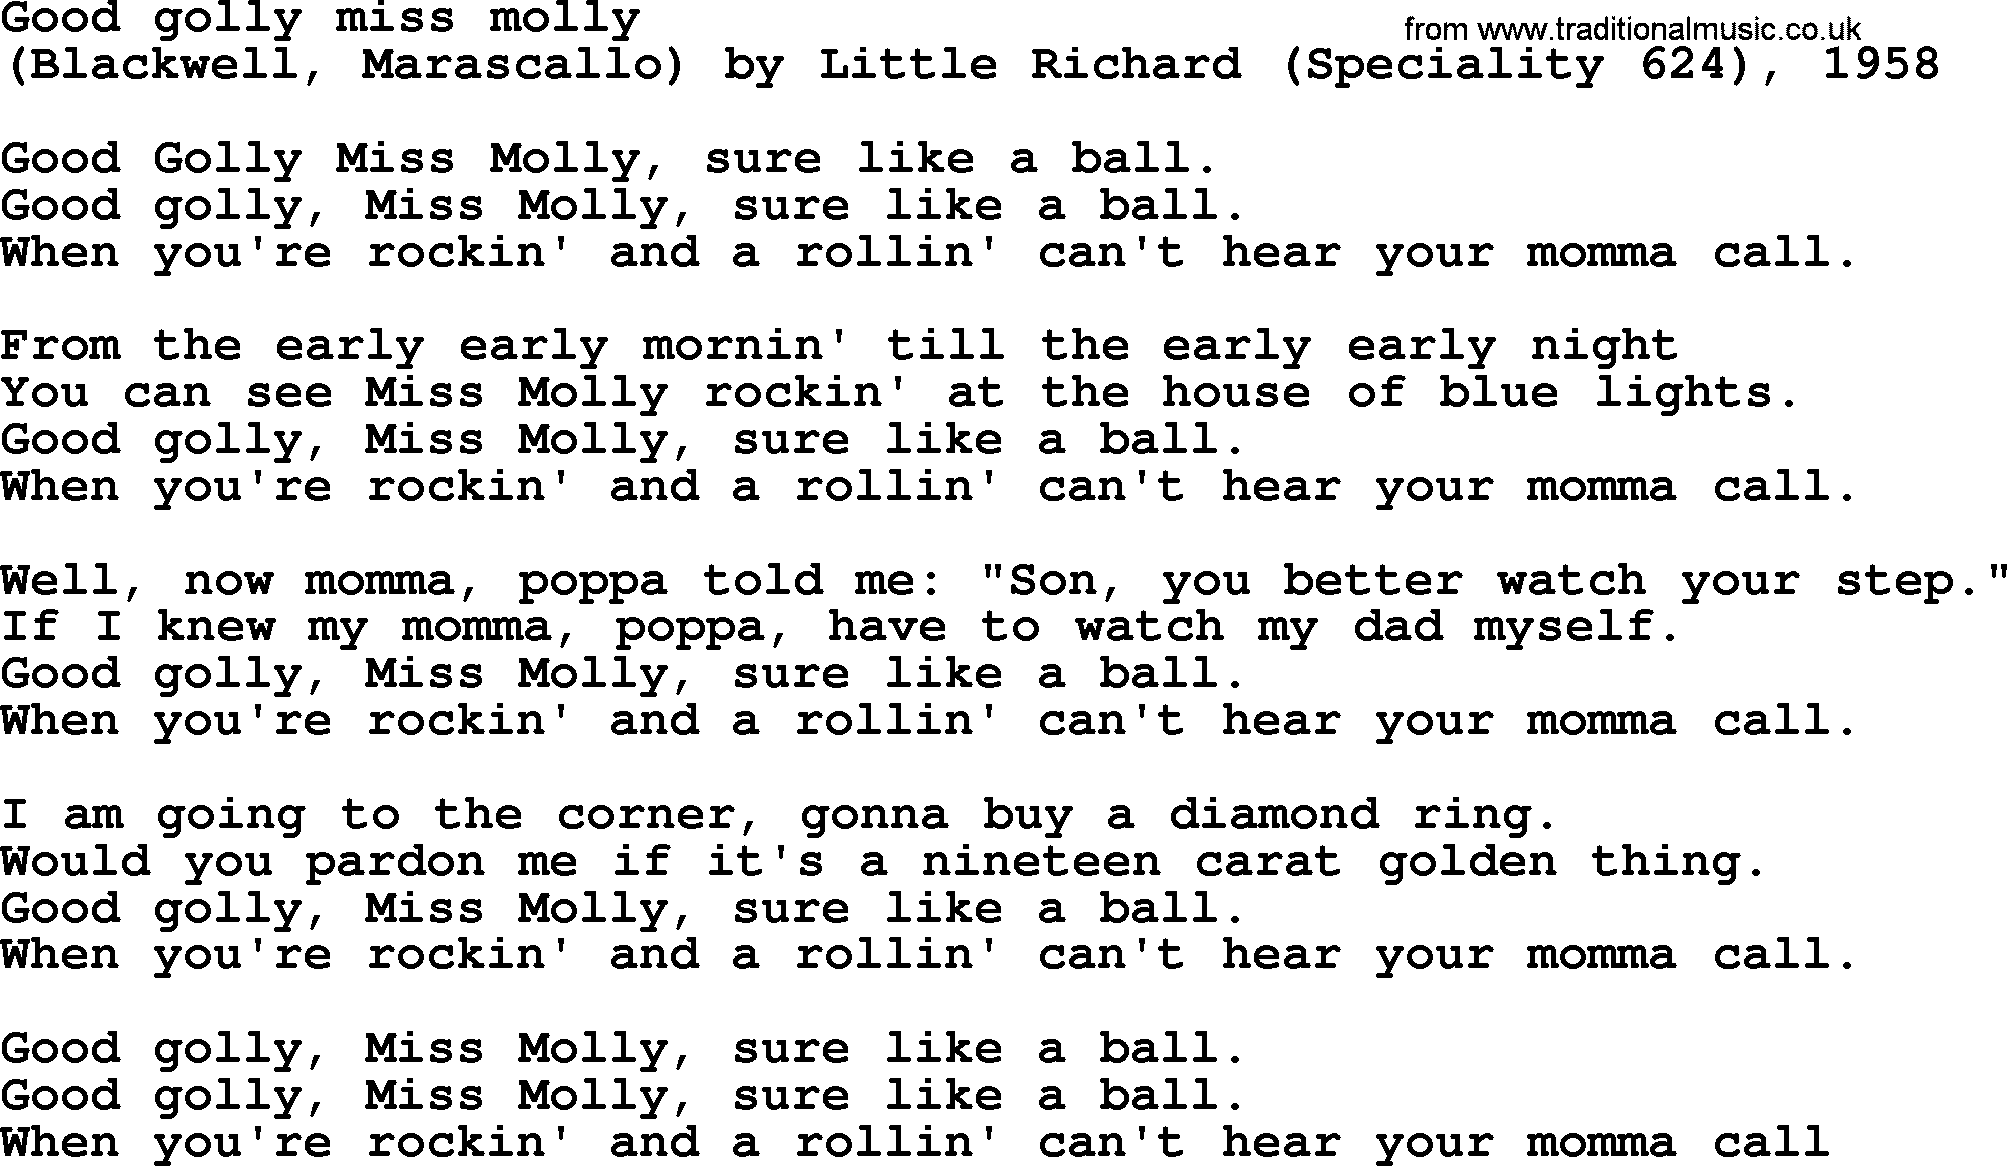 Bruce Springsteen song: Good Golly Miss Molly lyrics